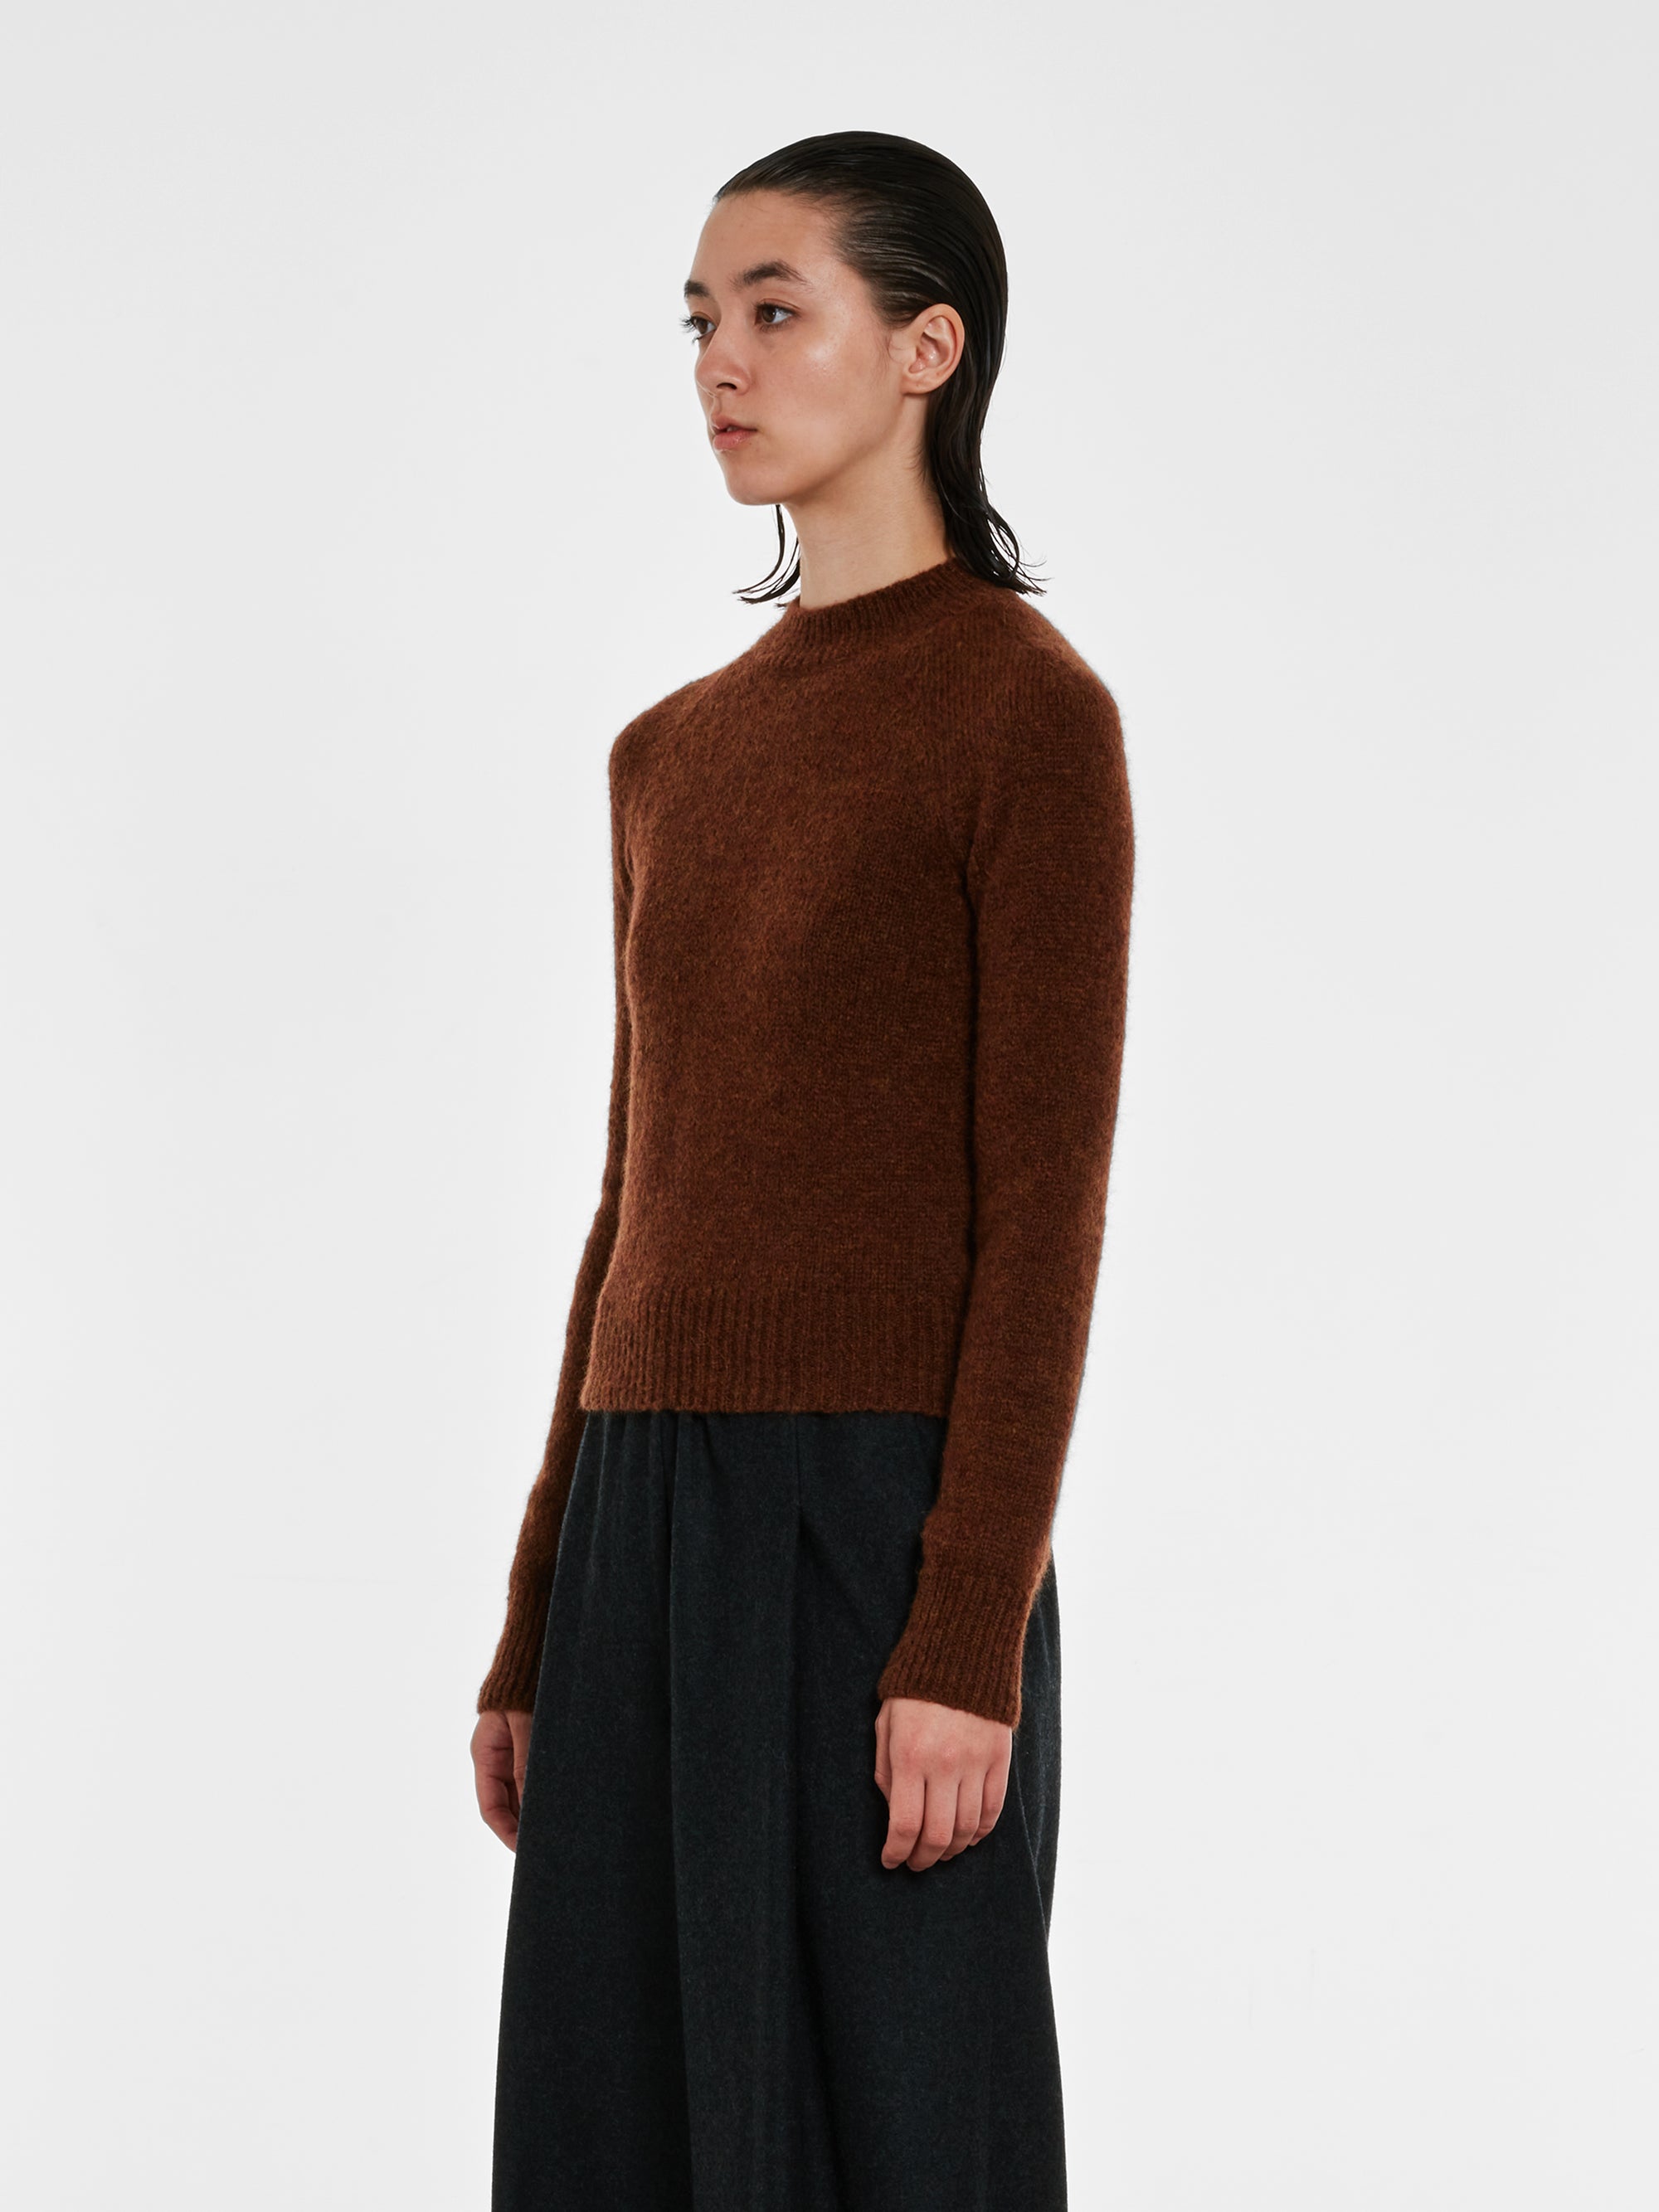 Dries Van Noten - Women’s Fitted Sweater - (Brown) view 2